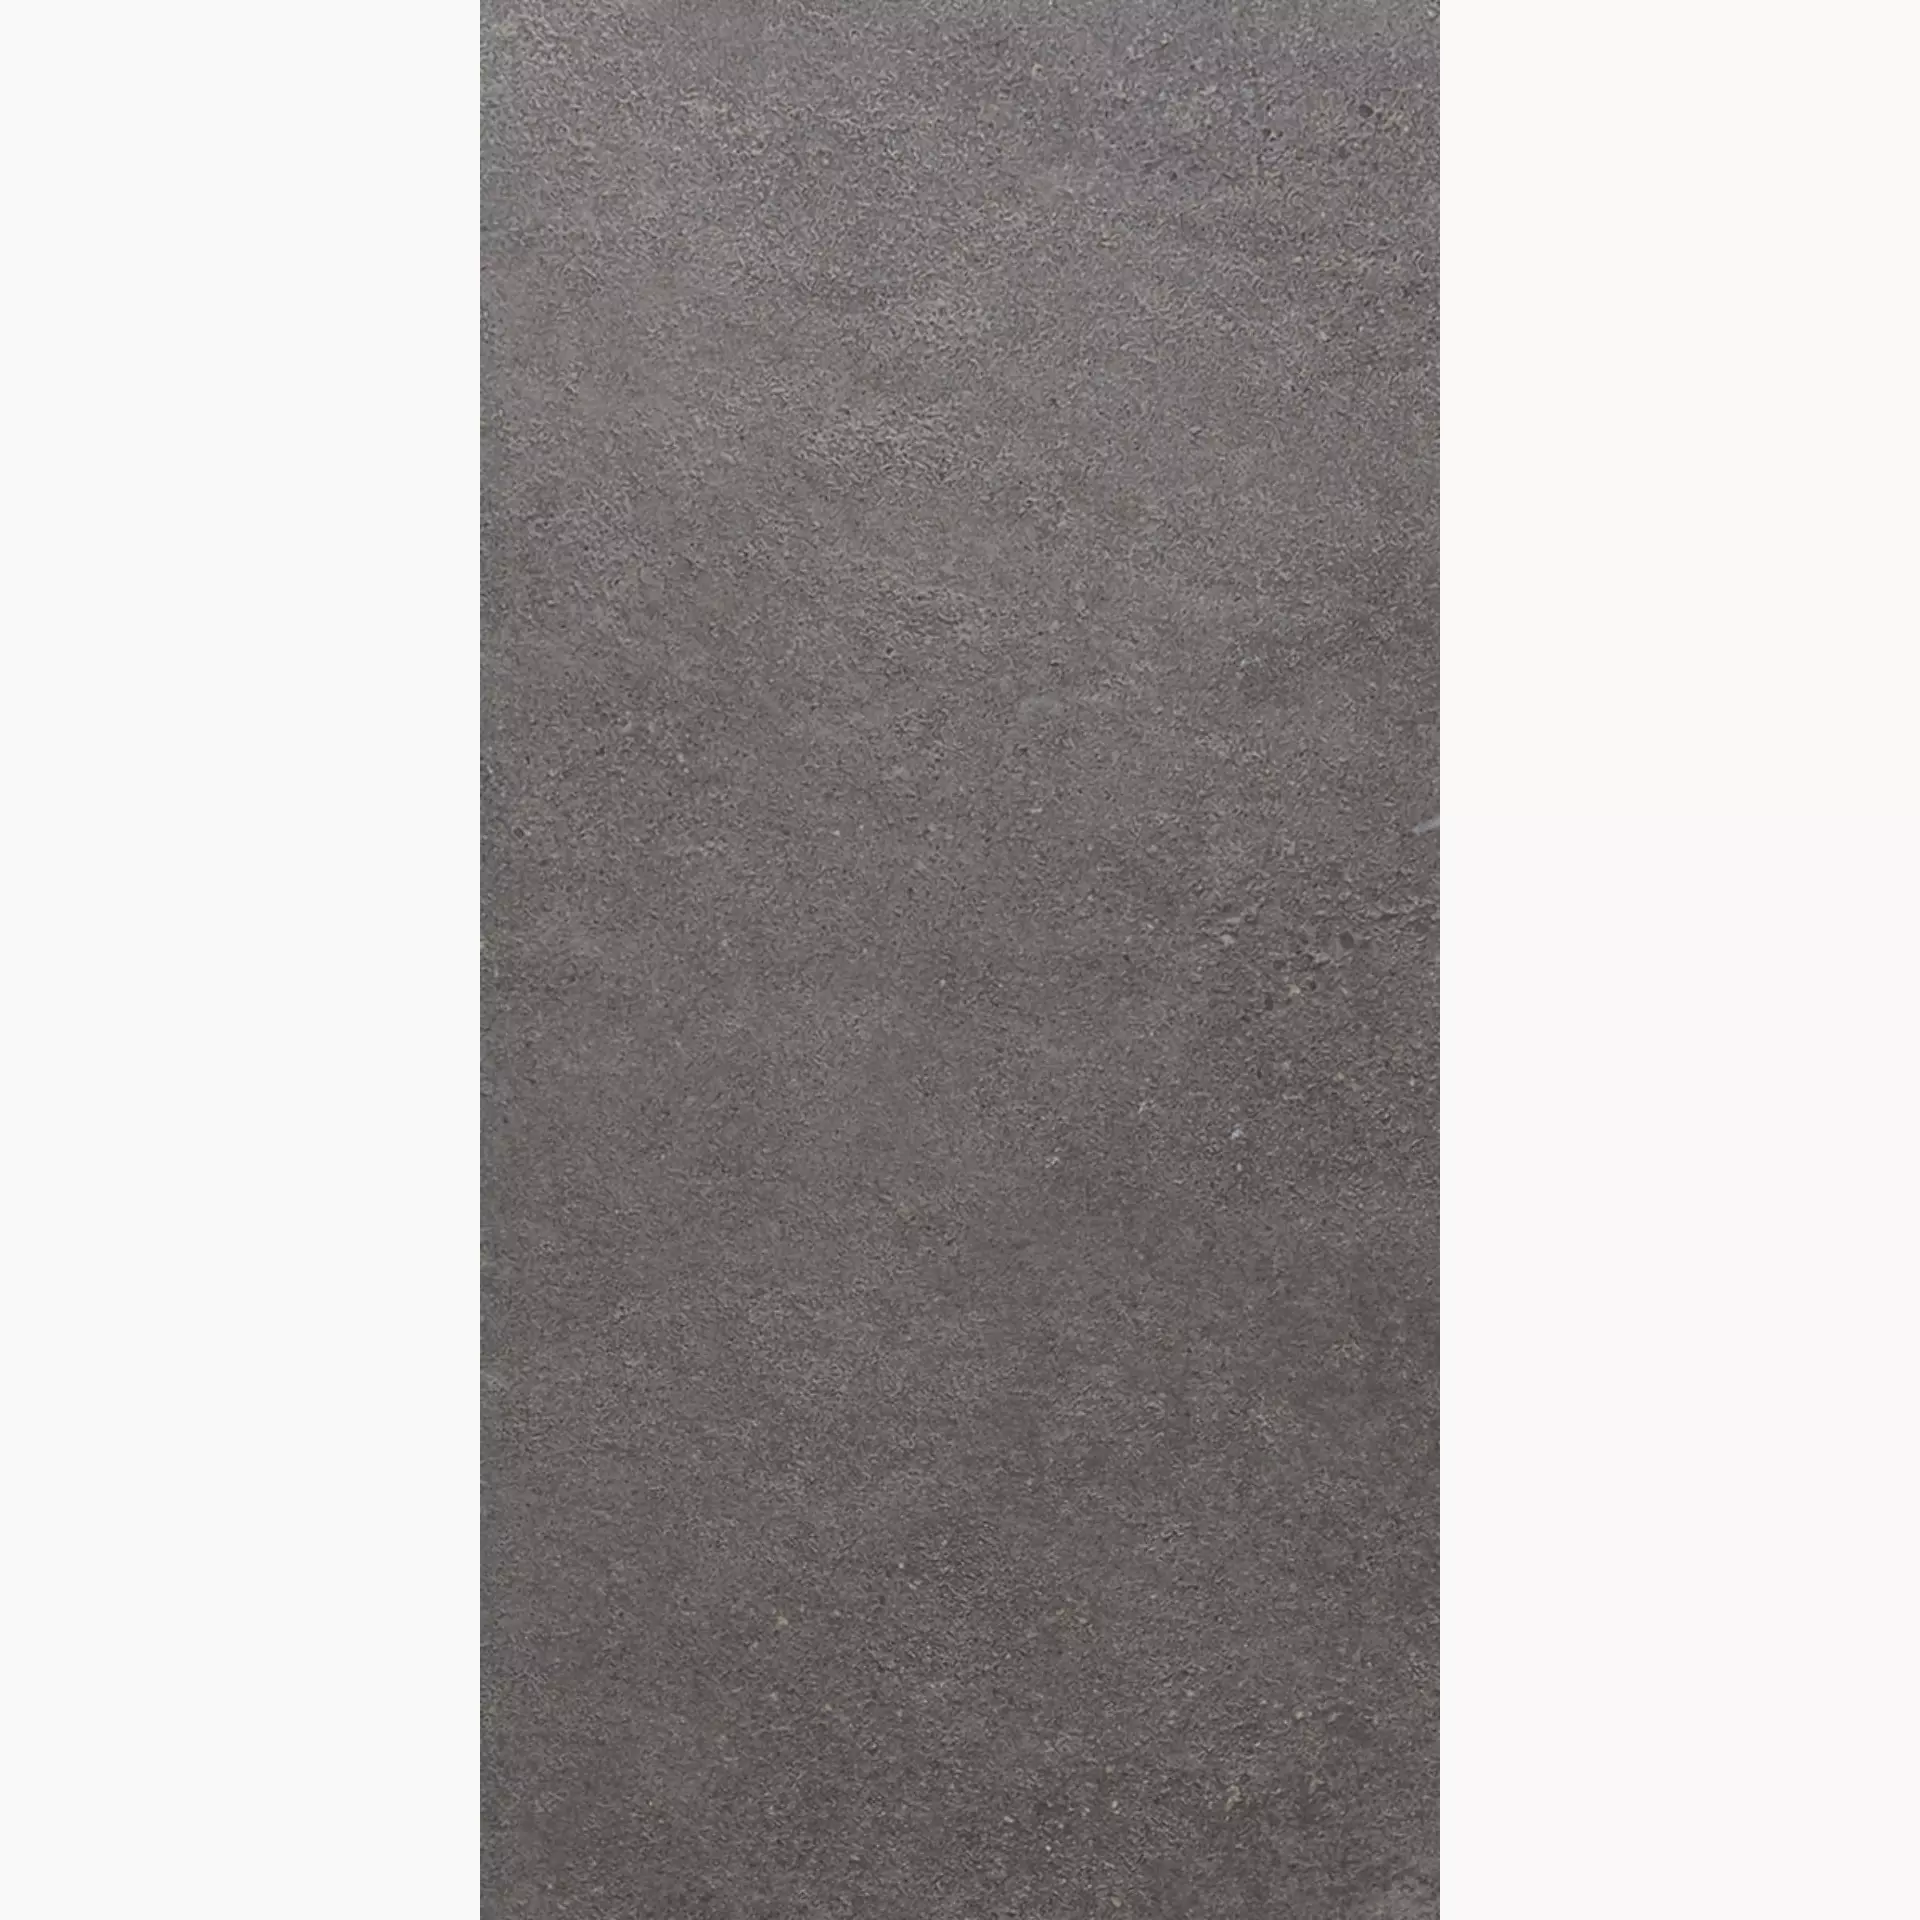 Rondine Loft Dark Naturale J89018 30x60cm rektifiziert 8,5mm